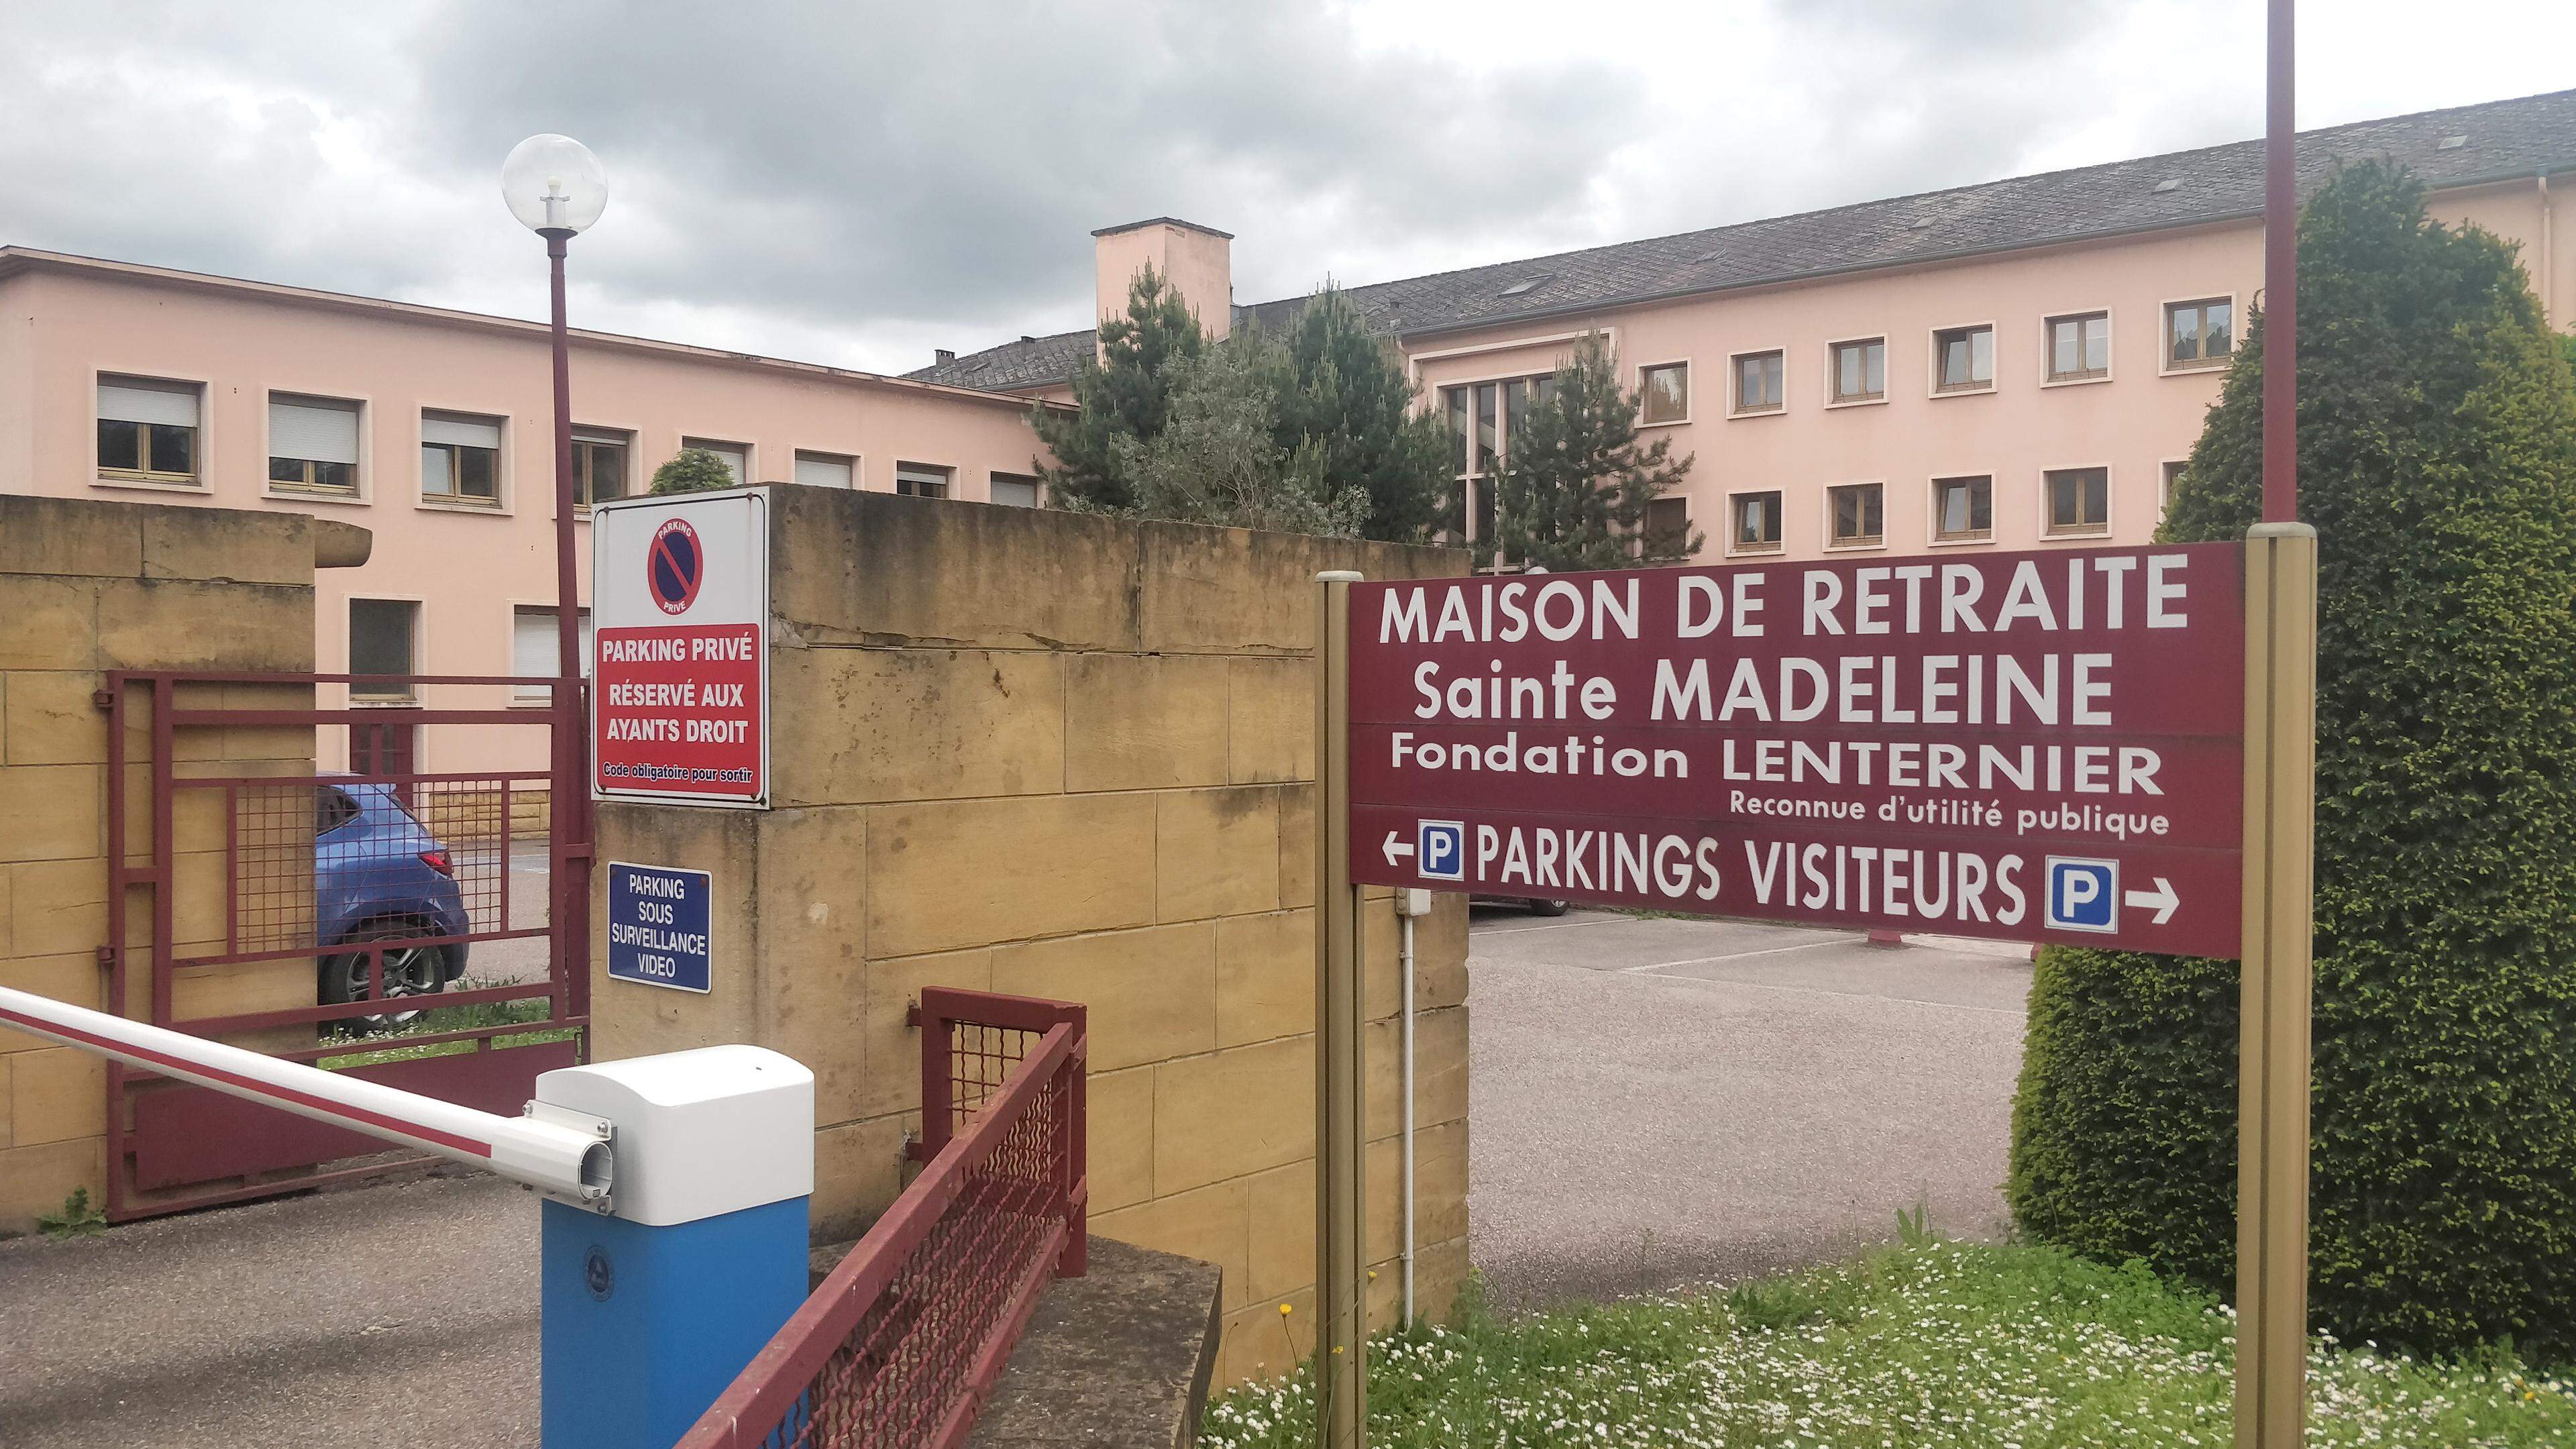 Les faits se sont produits au sein de la maison de retraite Sainte-Madeleine près du centre de Thionville.